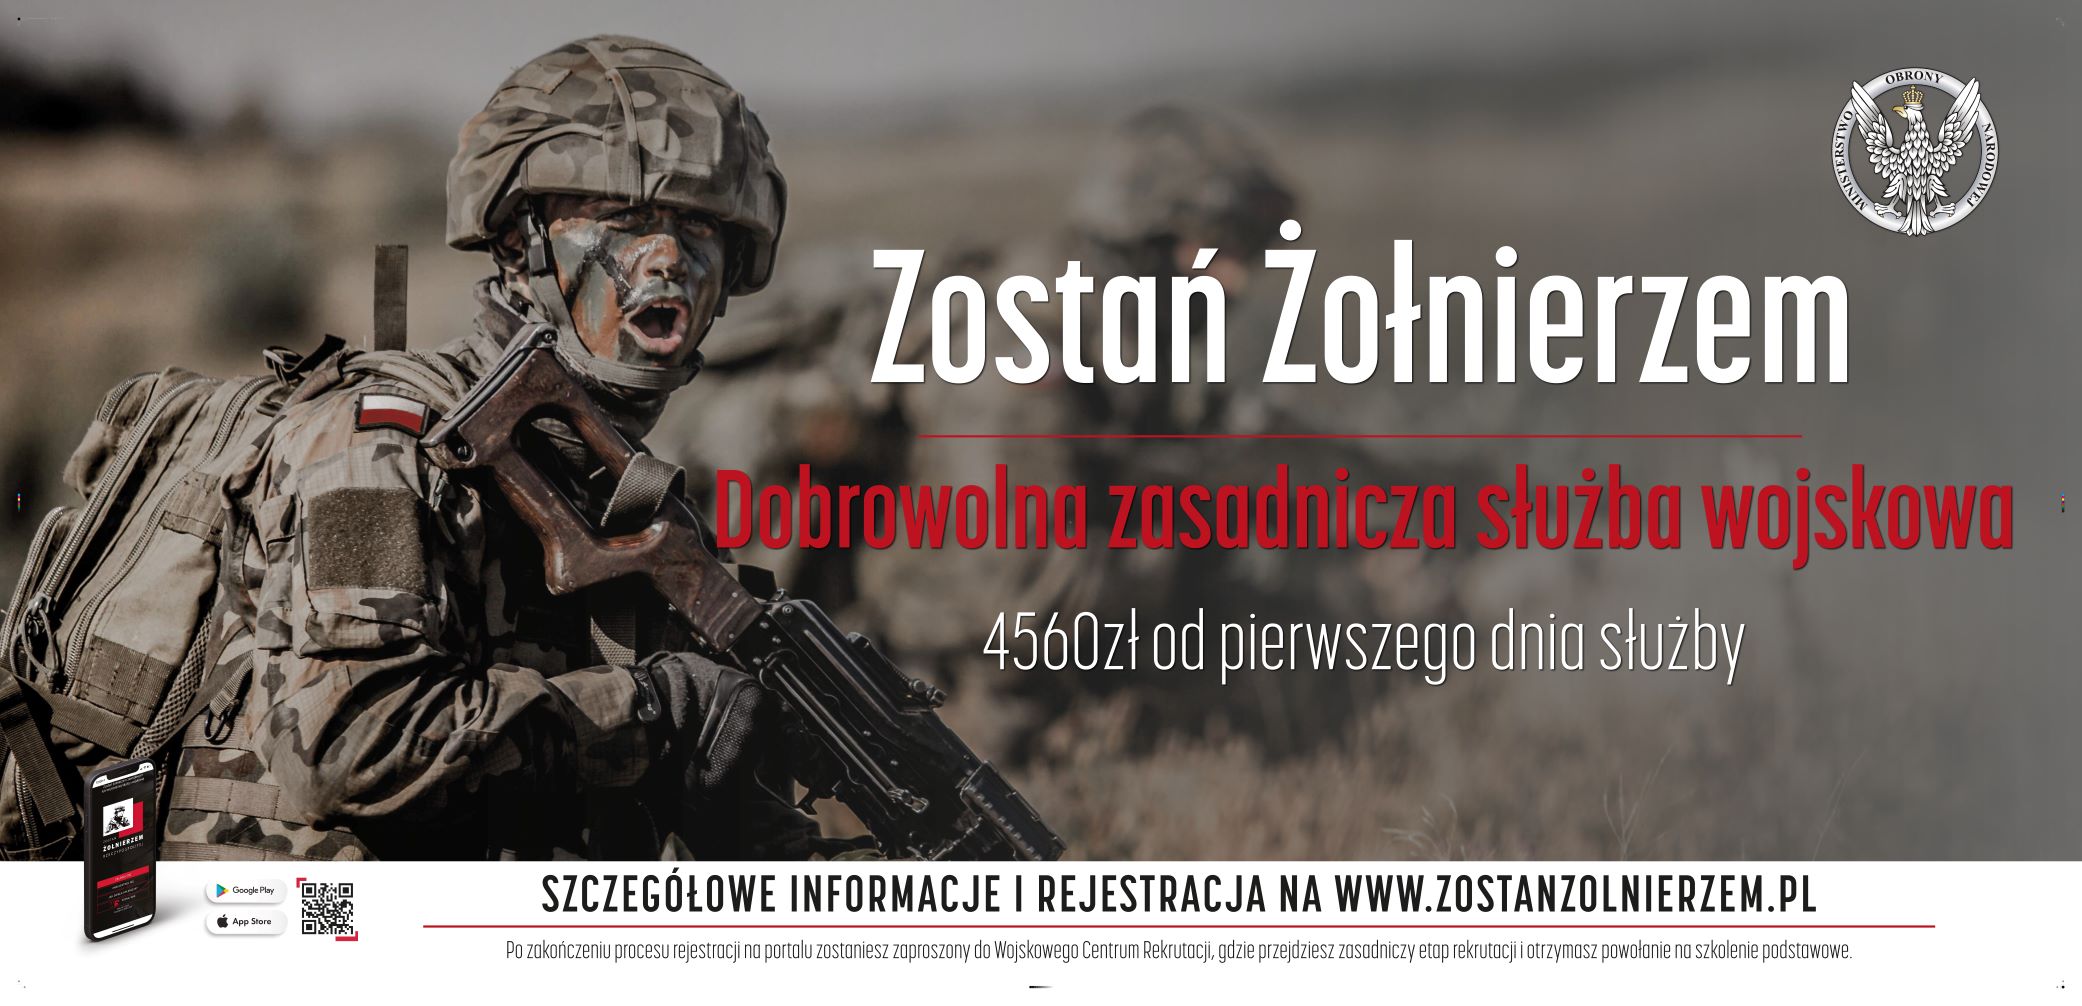 Baner zachęcający do odbycia dobrowolnej zasadniczej służby wojskowej, żołnierz w umundurowaniu na manewrach, tekst promocyjny